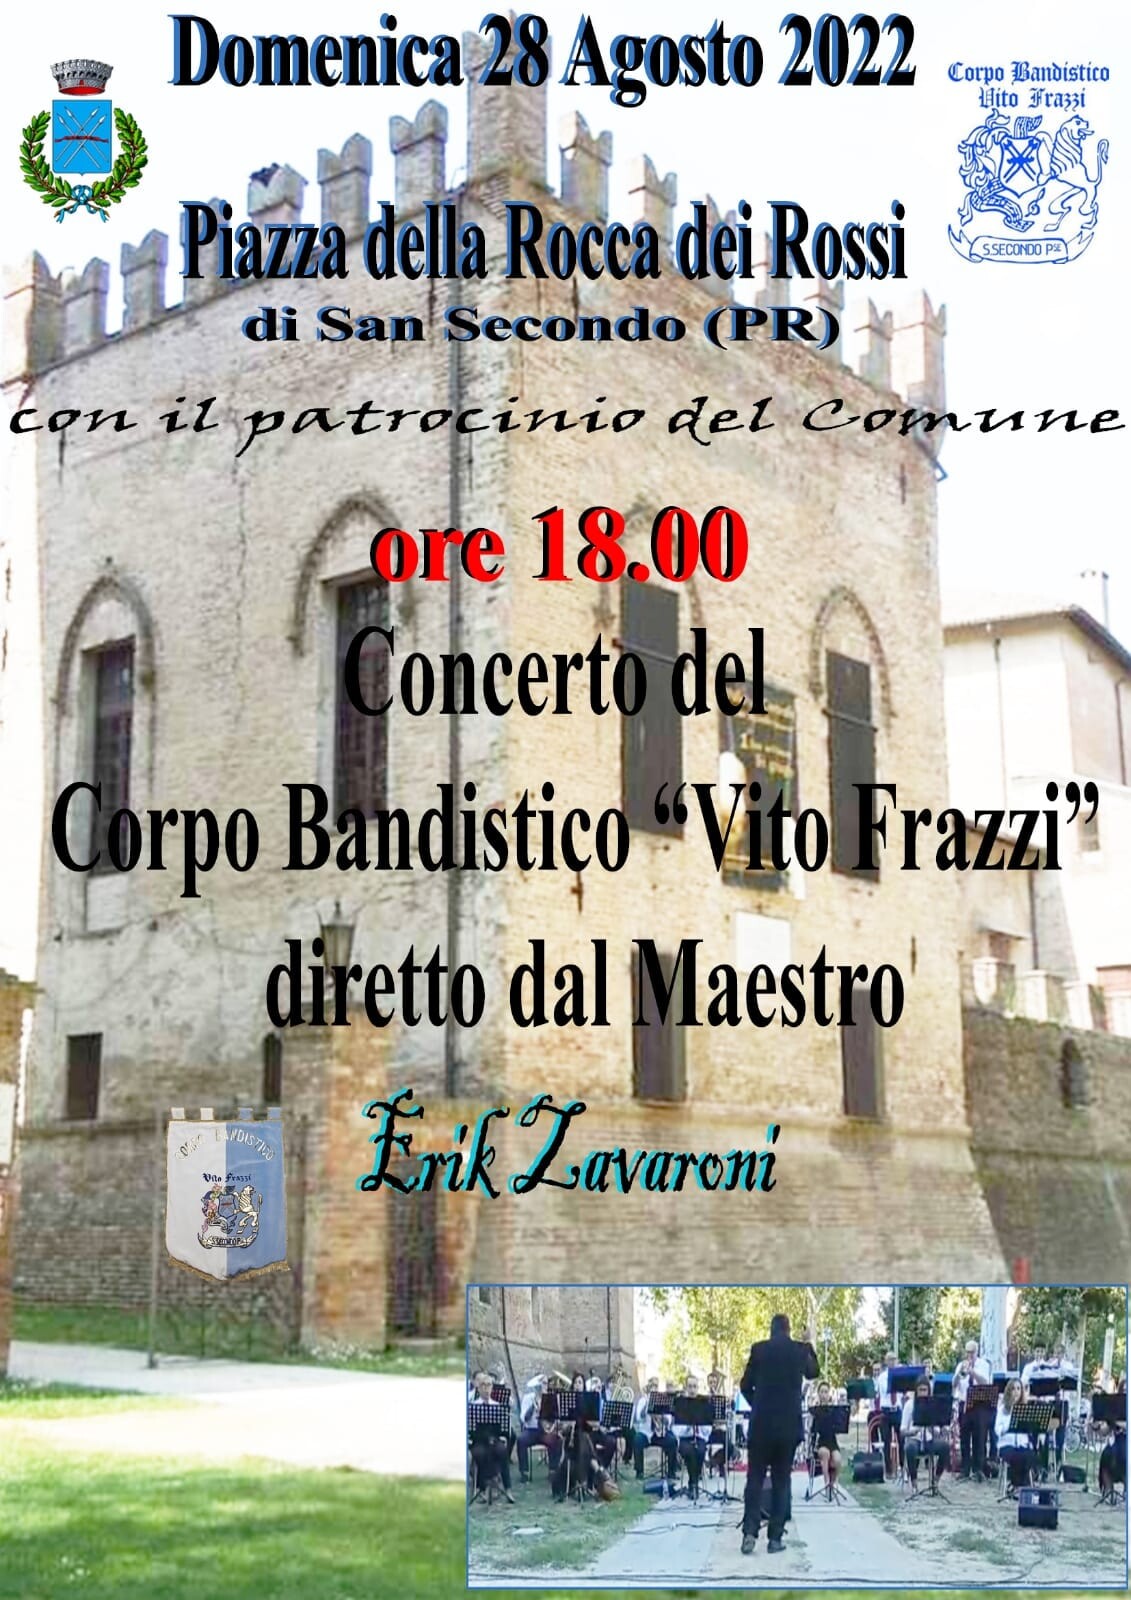 Concerto del corpo bandistico "Vito Frazzi"